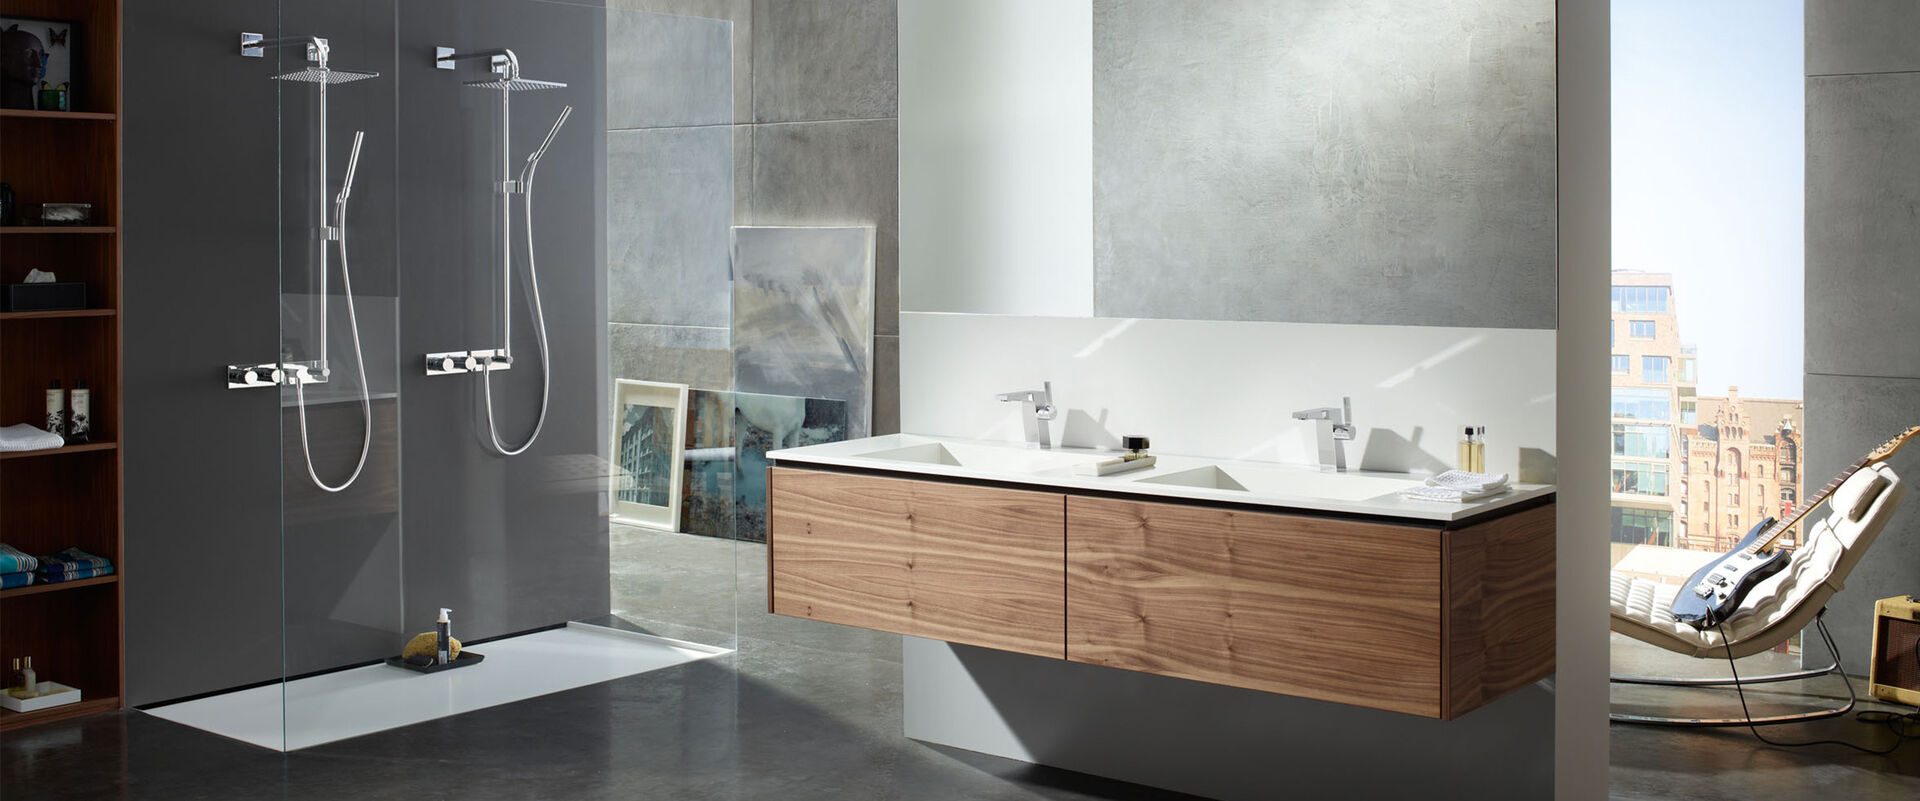 Cooles Badezimmer mit E-Gitarre und modernen Badarmaturen der Serie Hansaloft von Hansa am Doppelwaschtisch und in der Dusche.